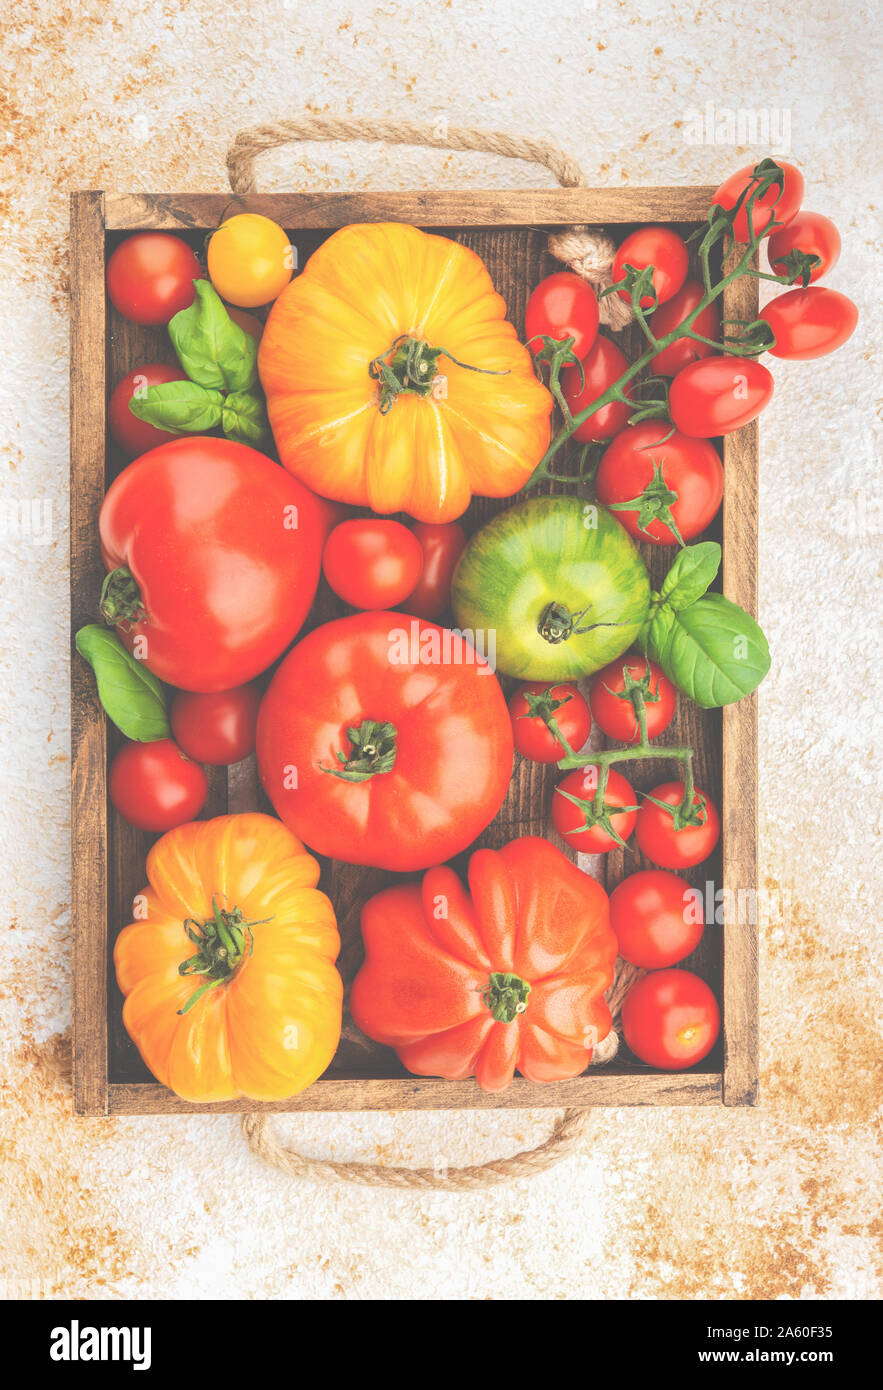 Pomodori piccoli e grandi in scatola Foto Stock